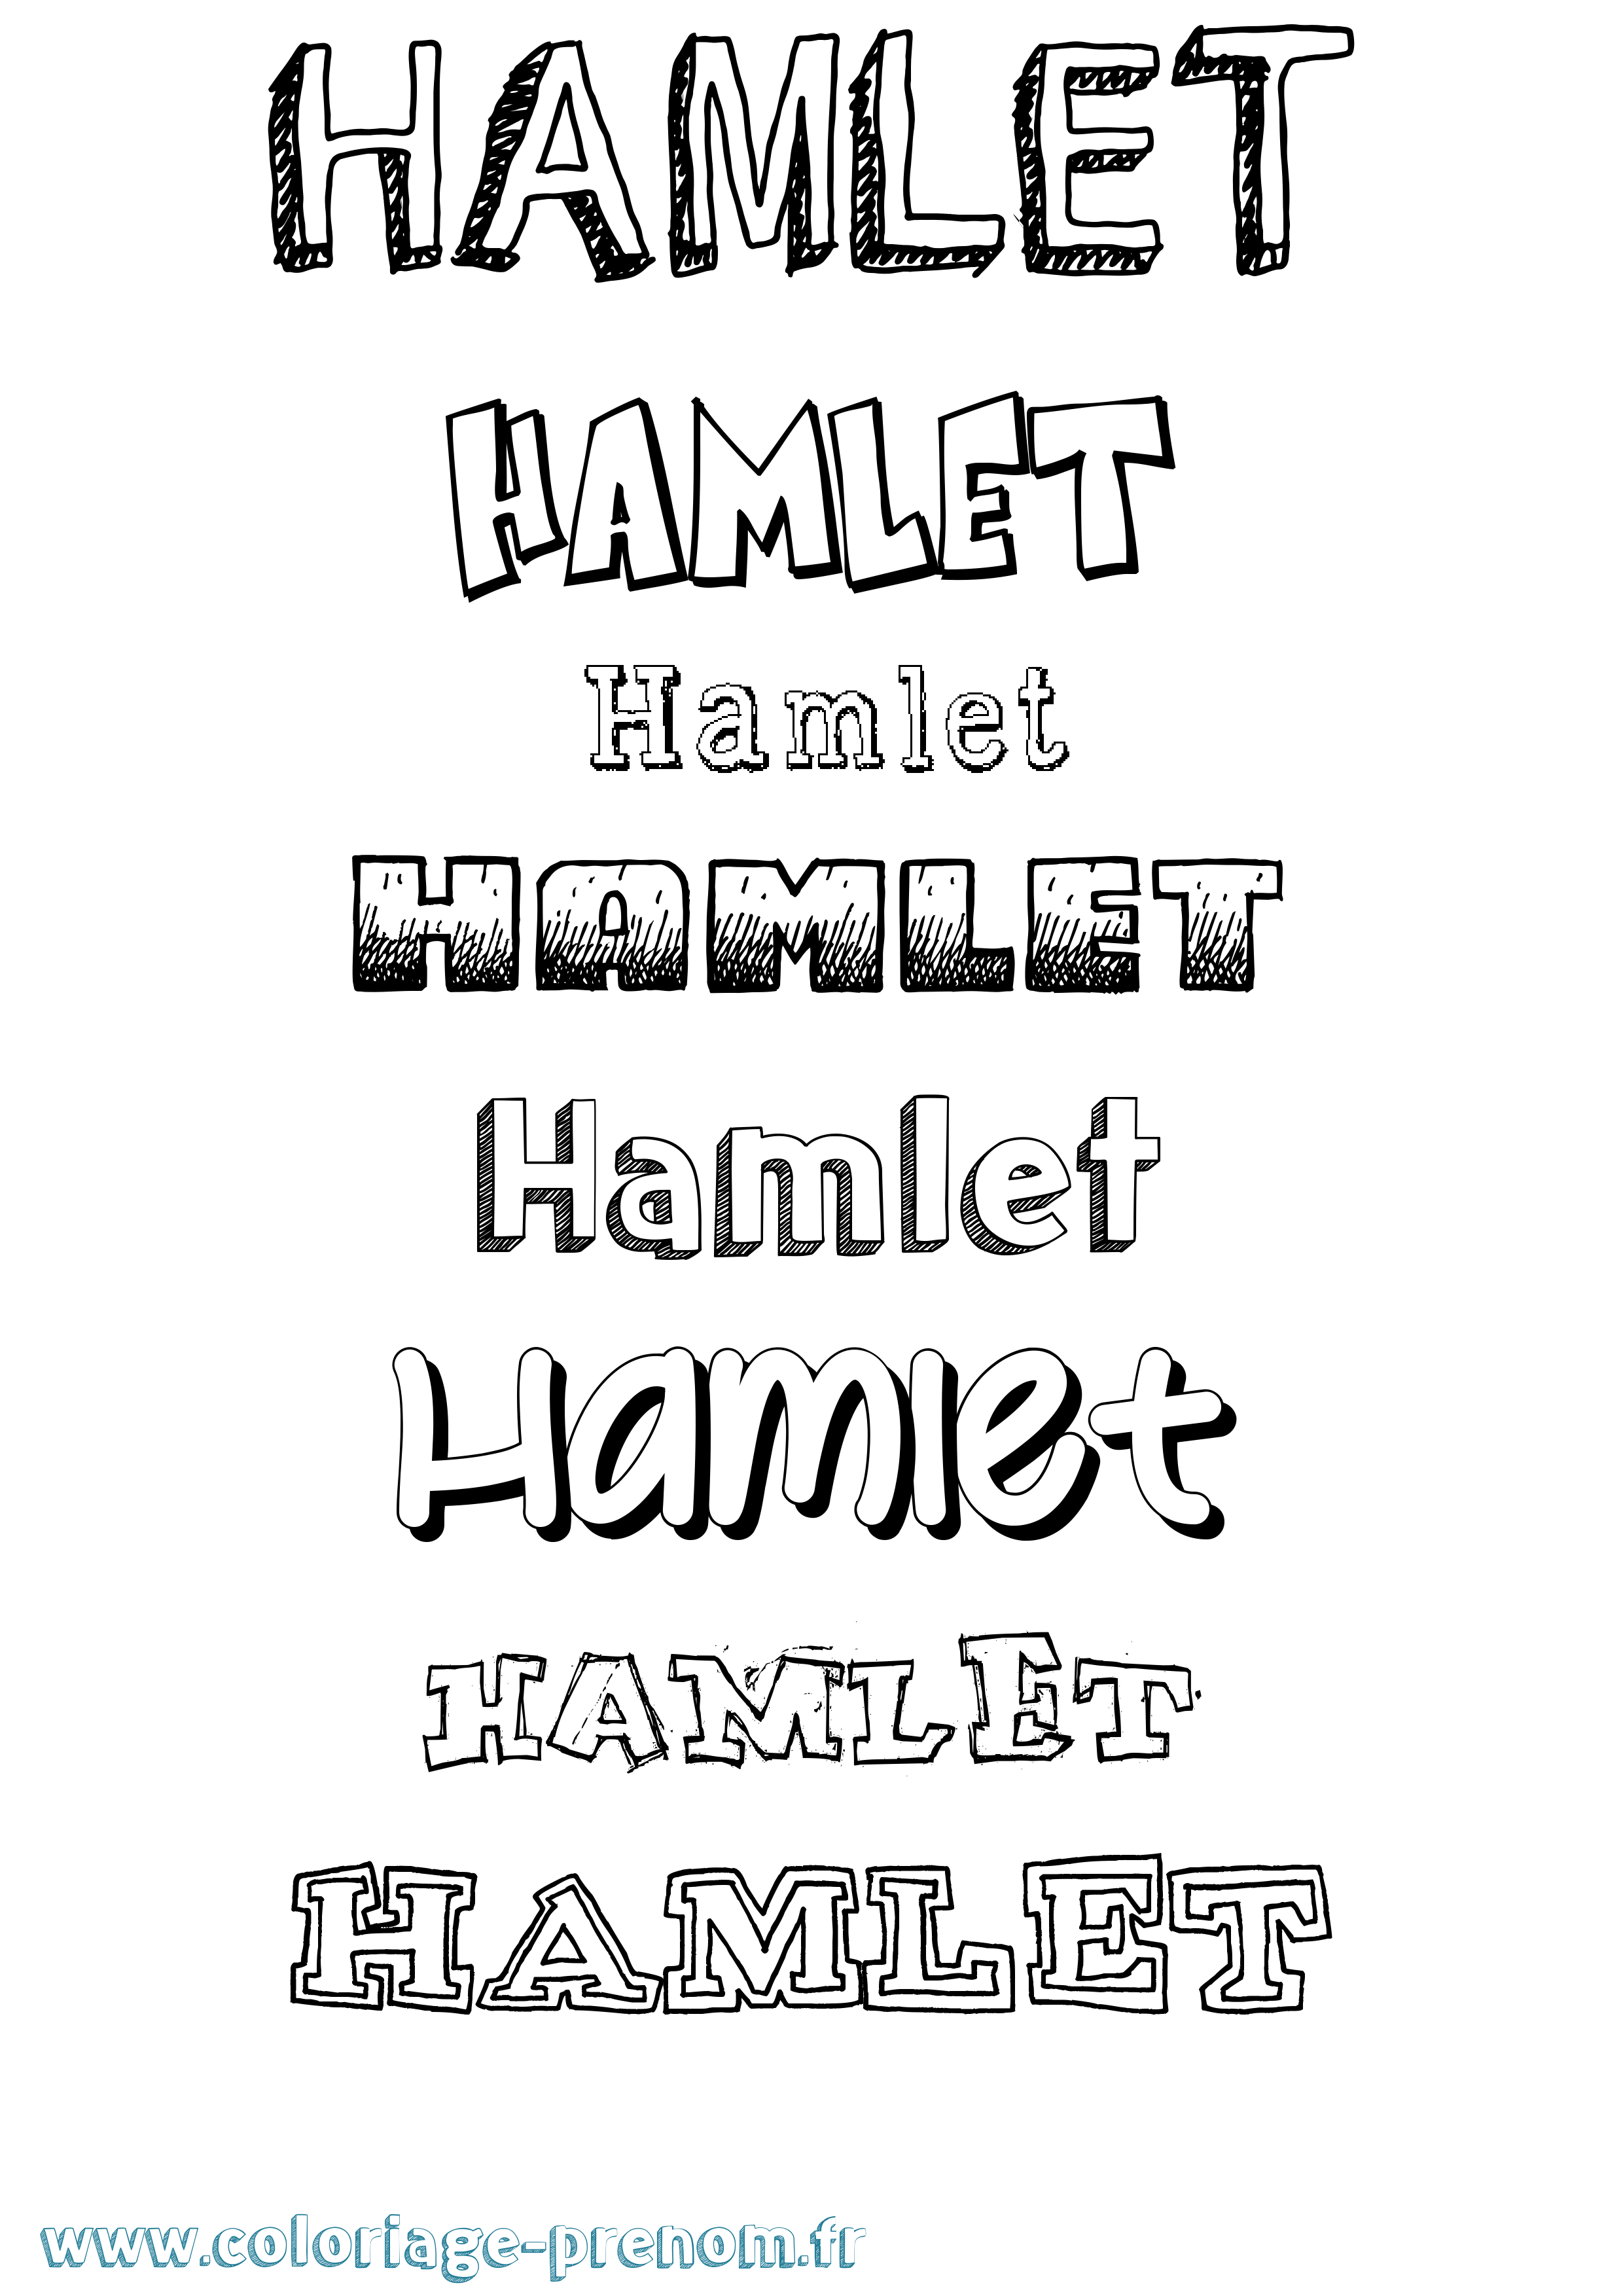 Coloriage prénom Hamlet Dessiné